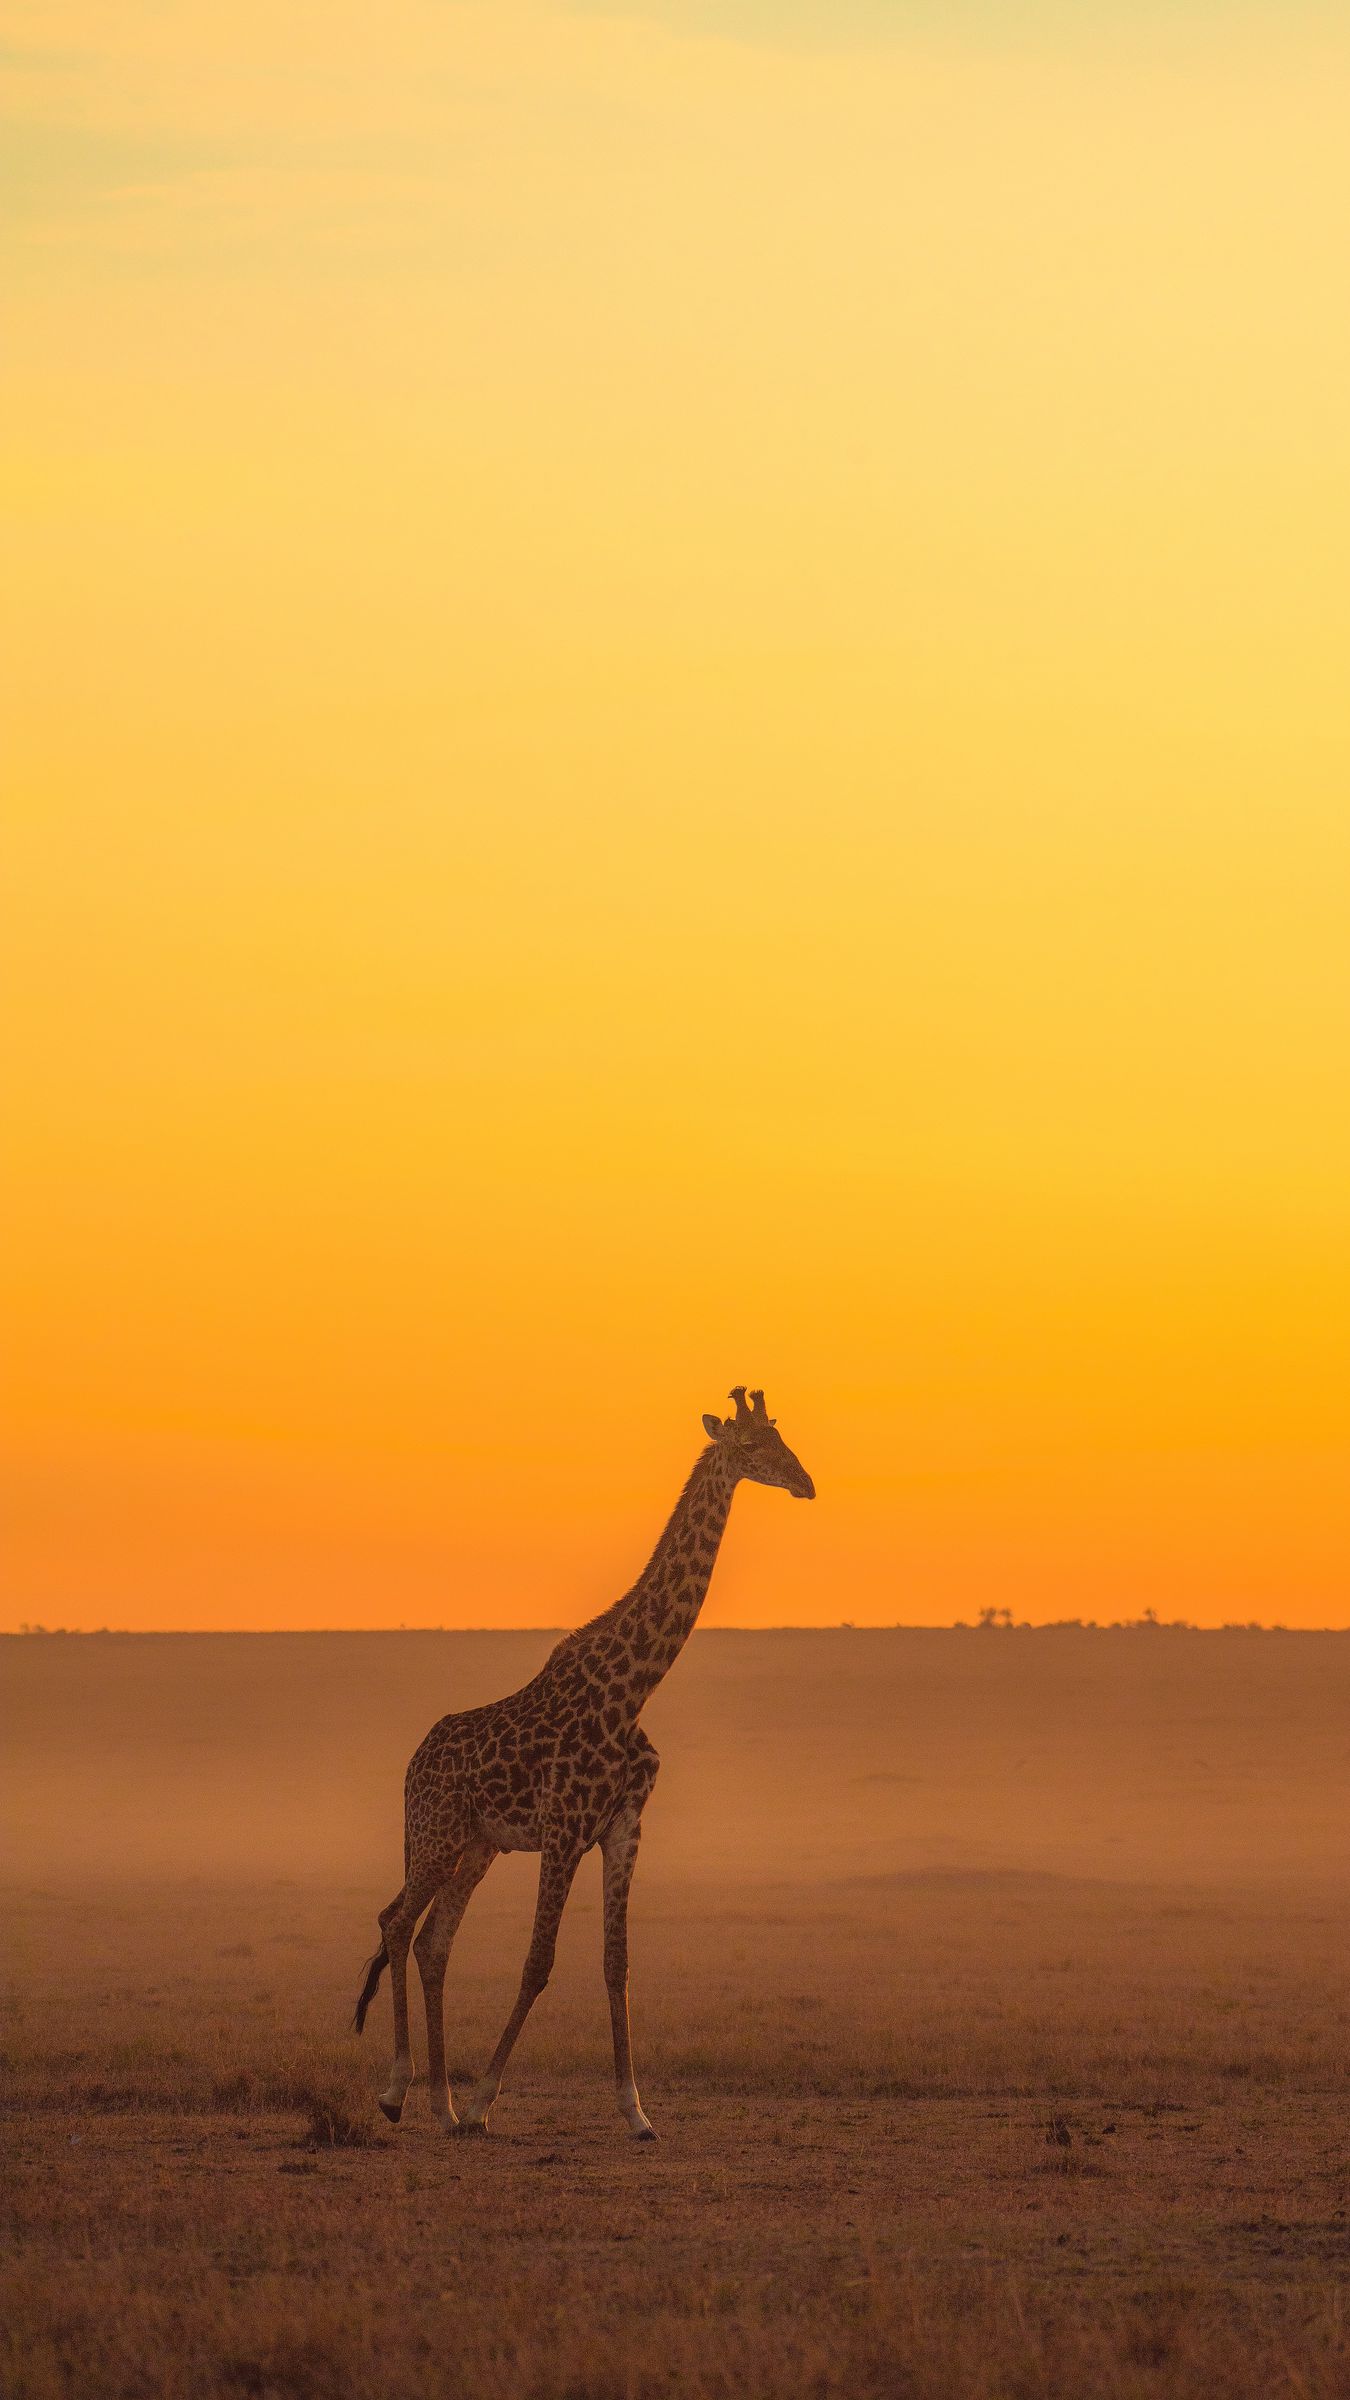 Giraffe sunset: Hãy thưởng thức cảnh hoàng hôn trong mơ với hình ảnh một chú hươu cao cổ đang đứng giữa cảnh quan đẹp như tranh vẽ. Với chiều nắng buông xuống, cùng cảnh sắc tuyệt đẹp của núi vàng tím, bạn sẽ cảm thấy cực kì thư giãn. Hãy xem hình ảnh một khoảnh khắc đẹp nhất của cuộc sống này.